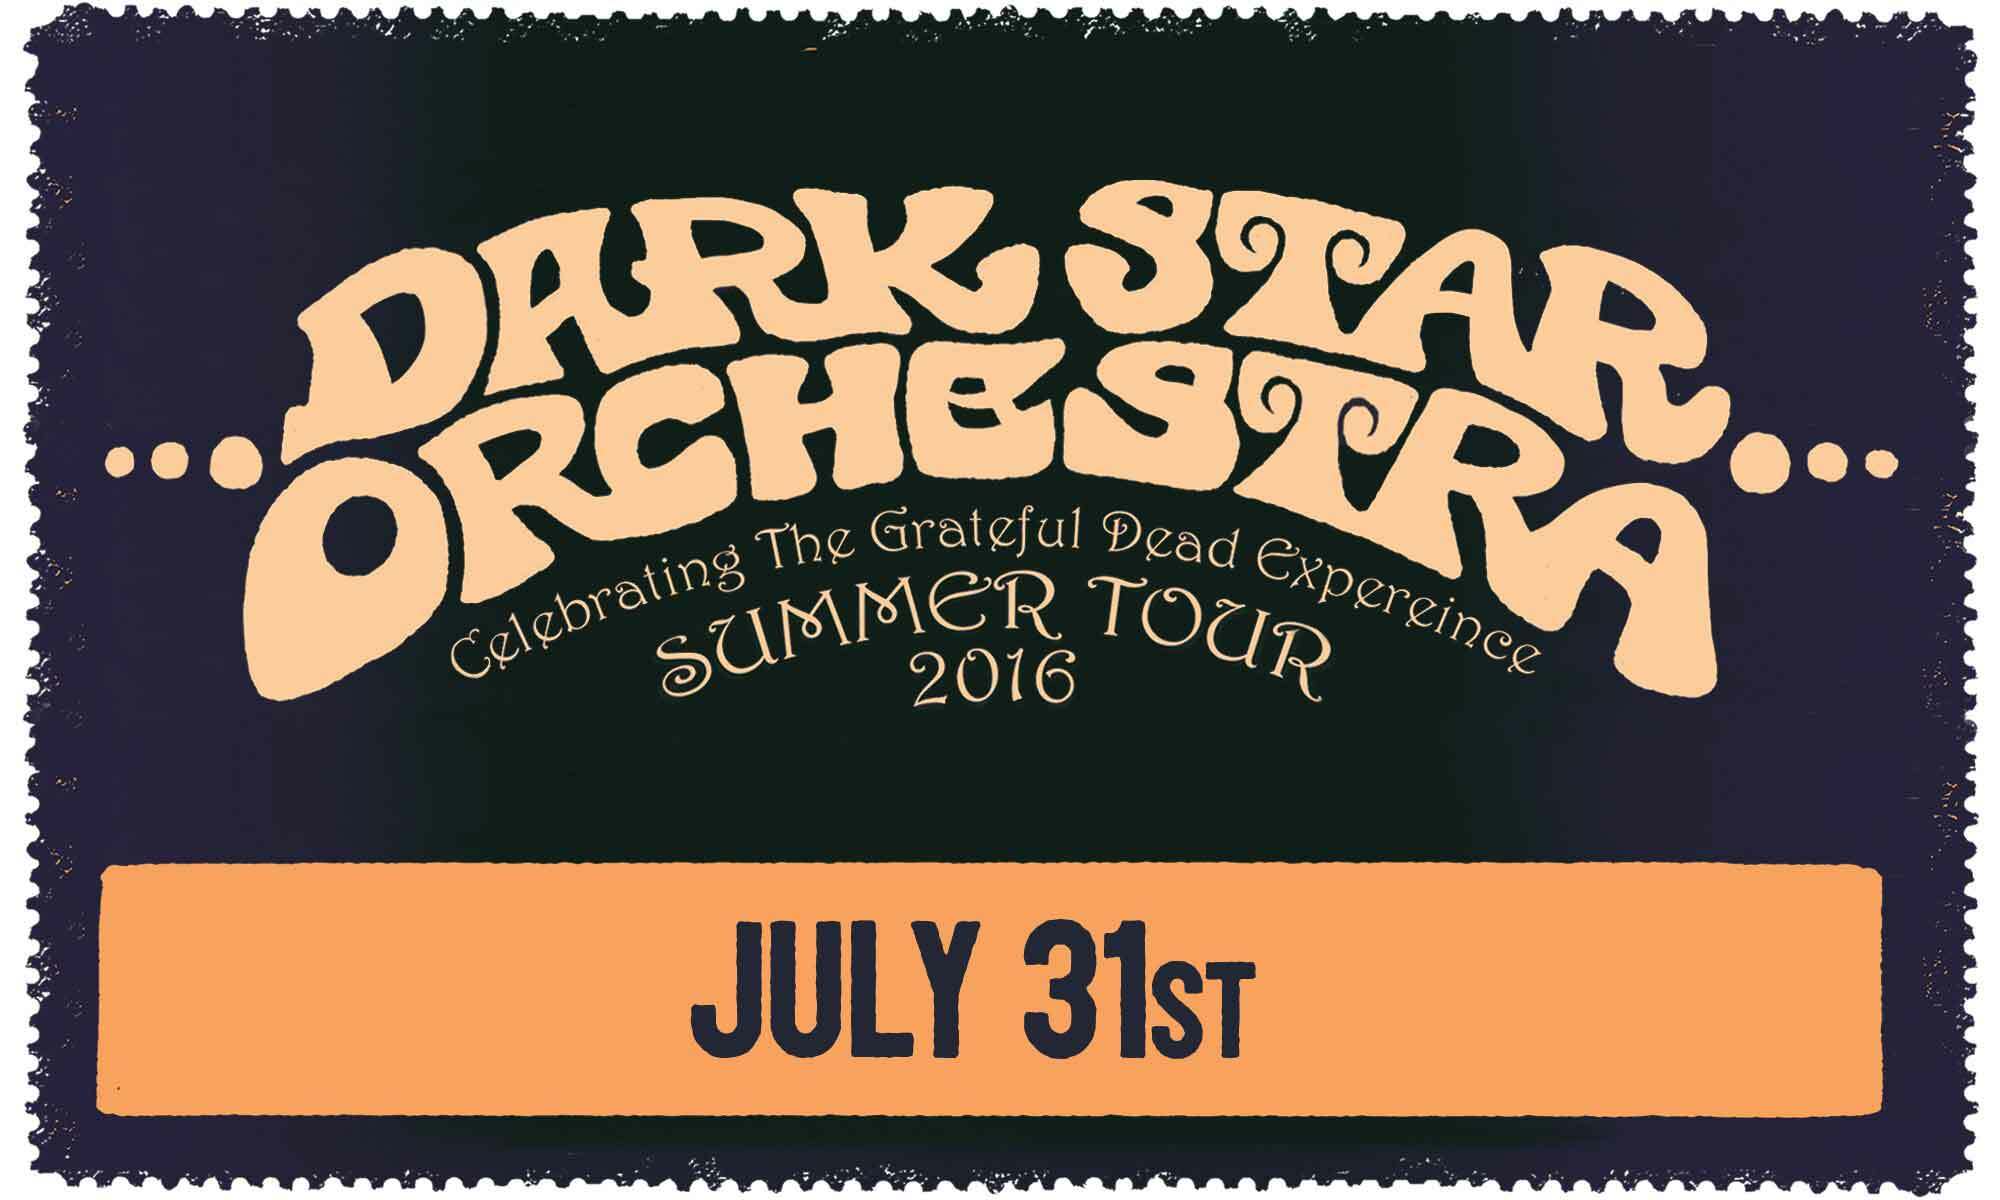 Dark Star Orchestra Live Concert